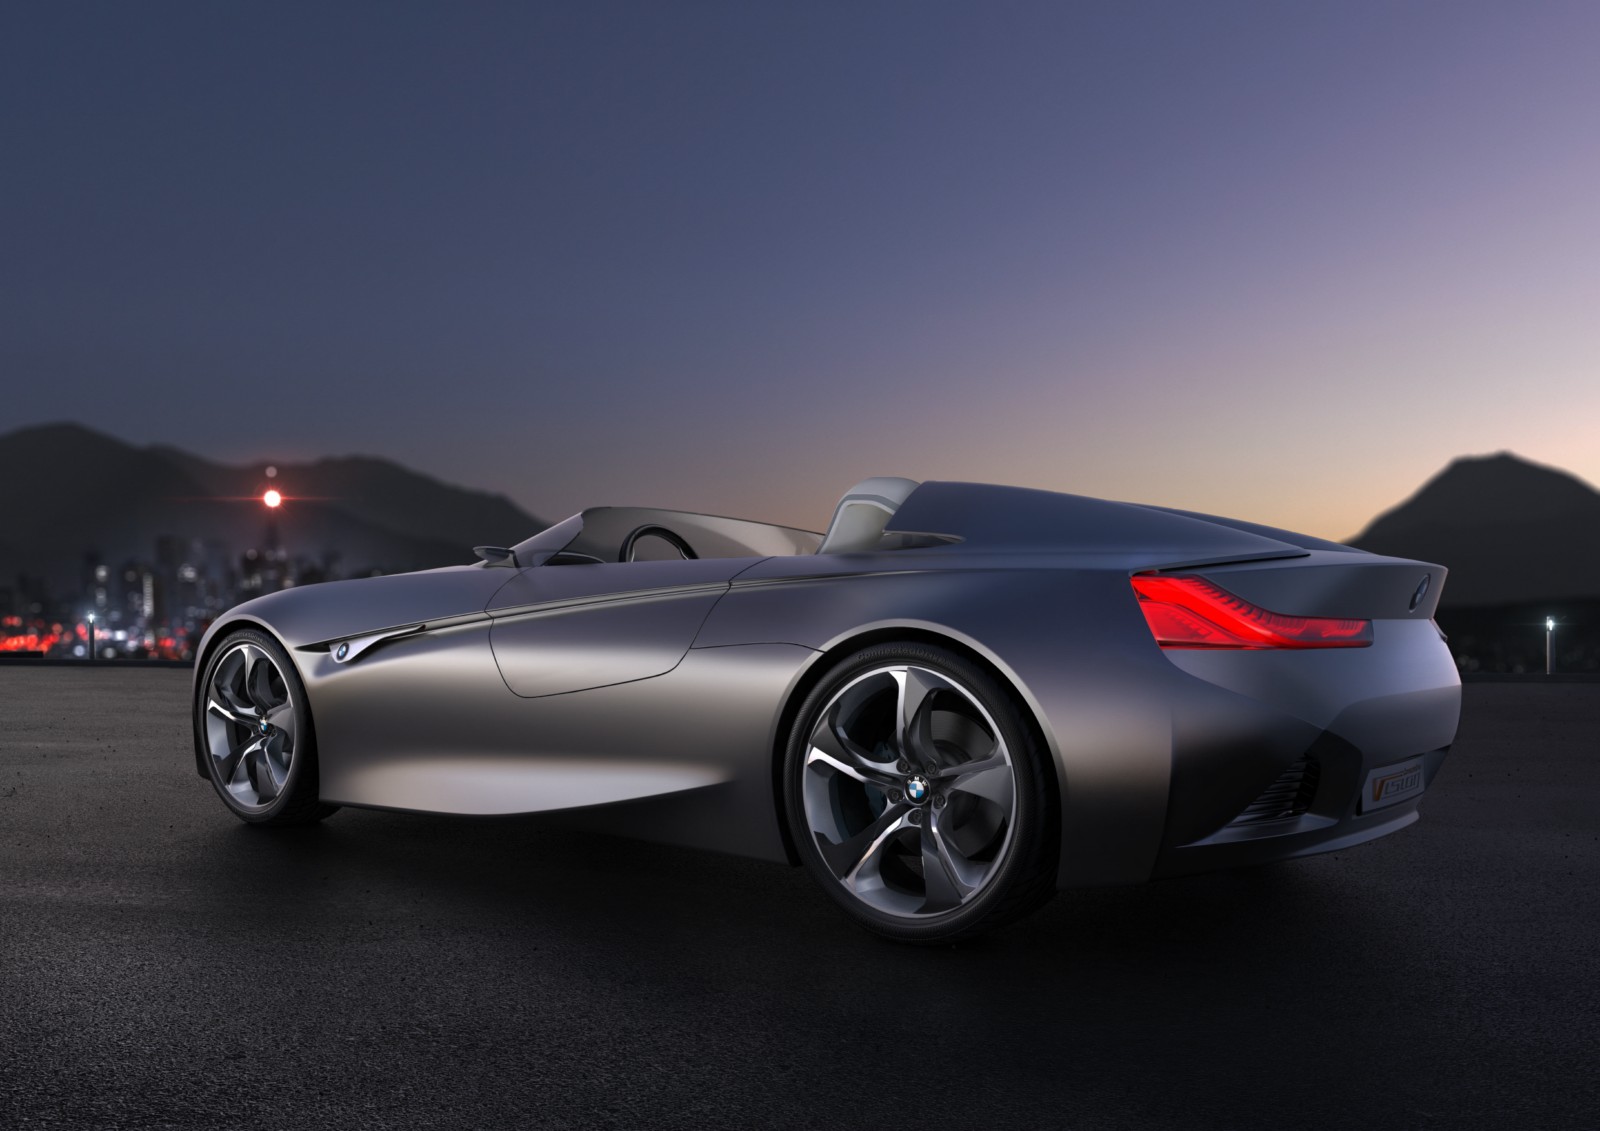 BMW Vision ConnectedDrive Concept 3